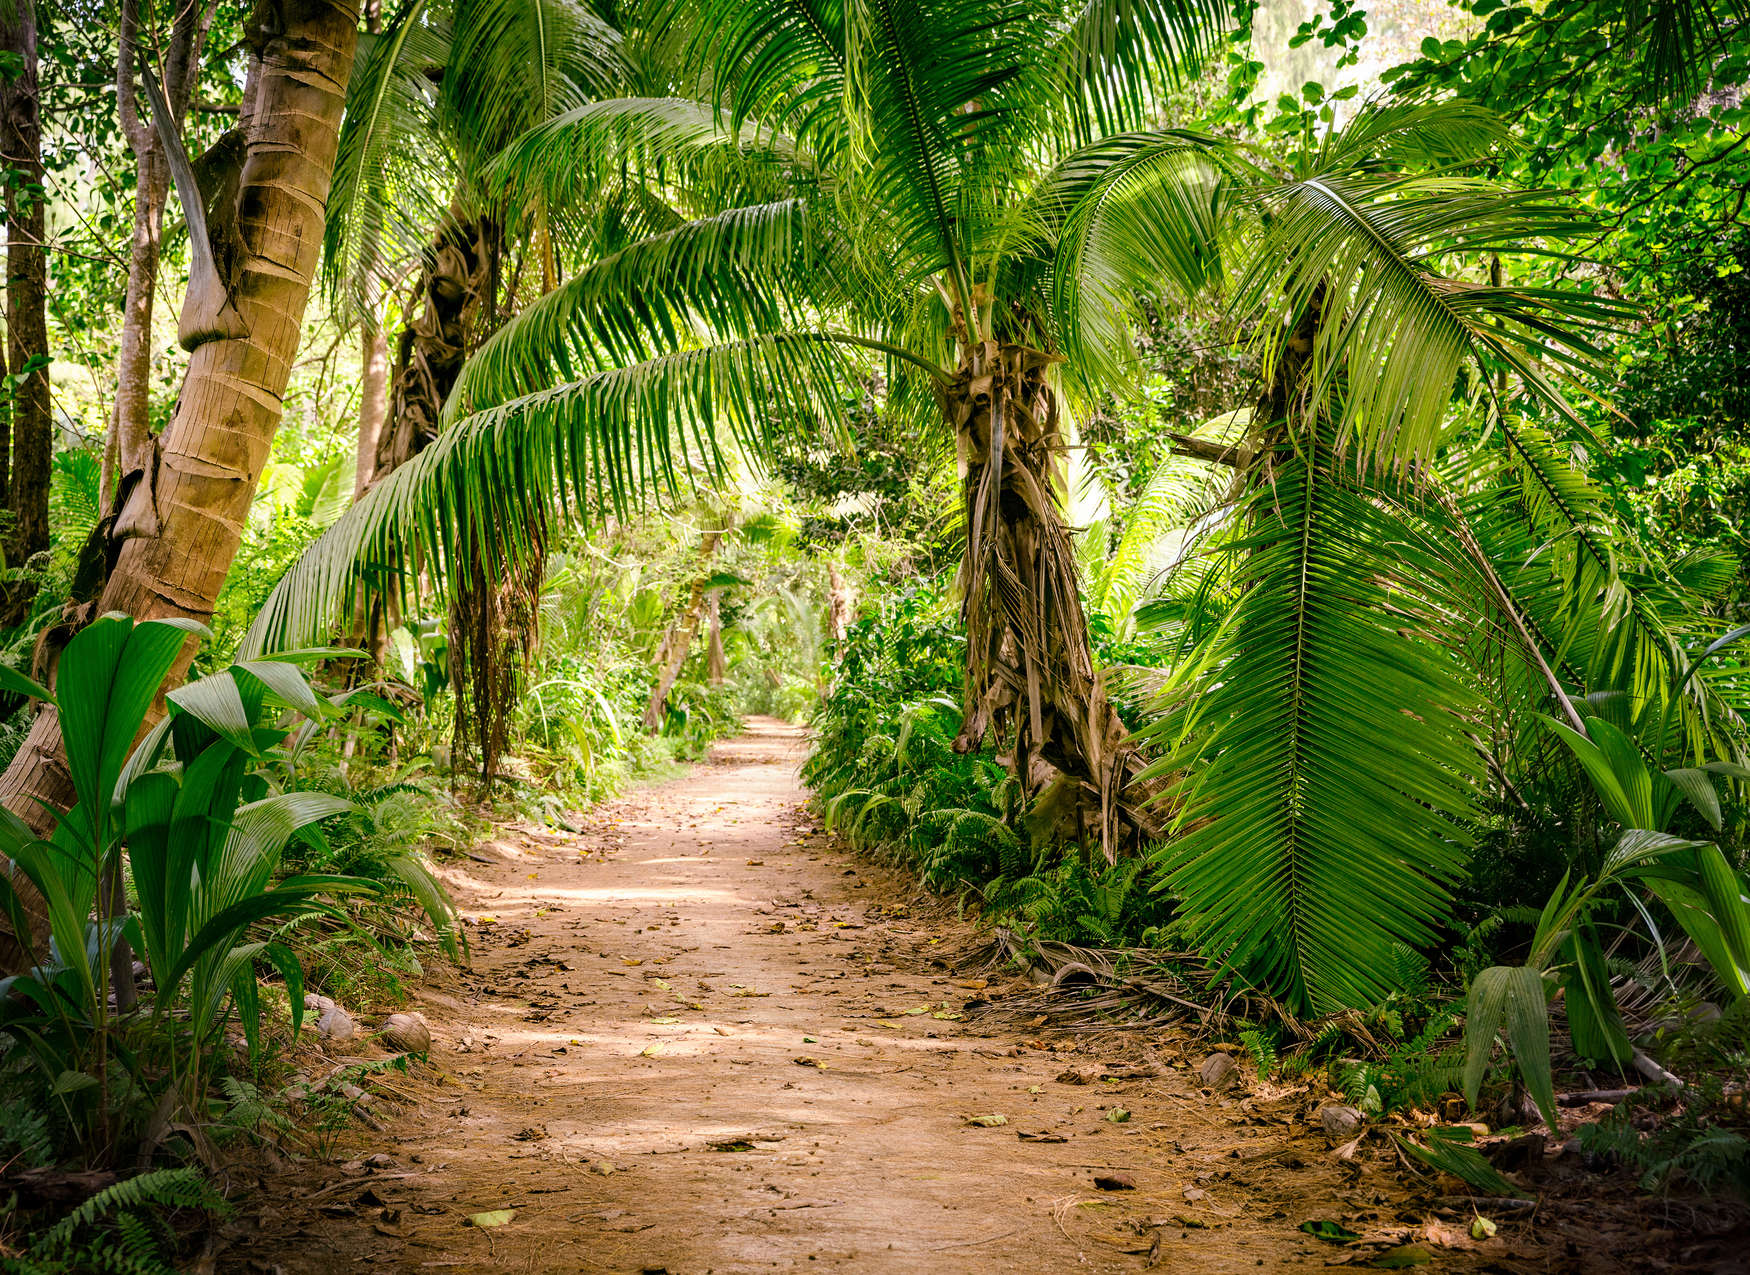             Palmbomenpad door een tropisch landschap - Groen, bruin
        